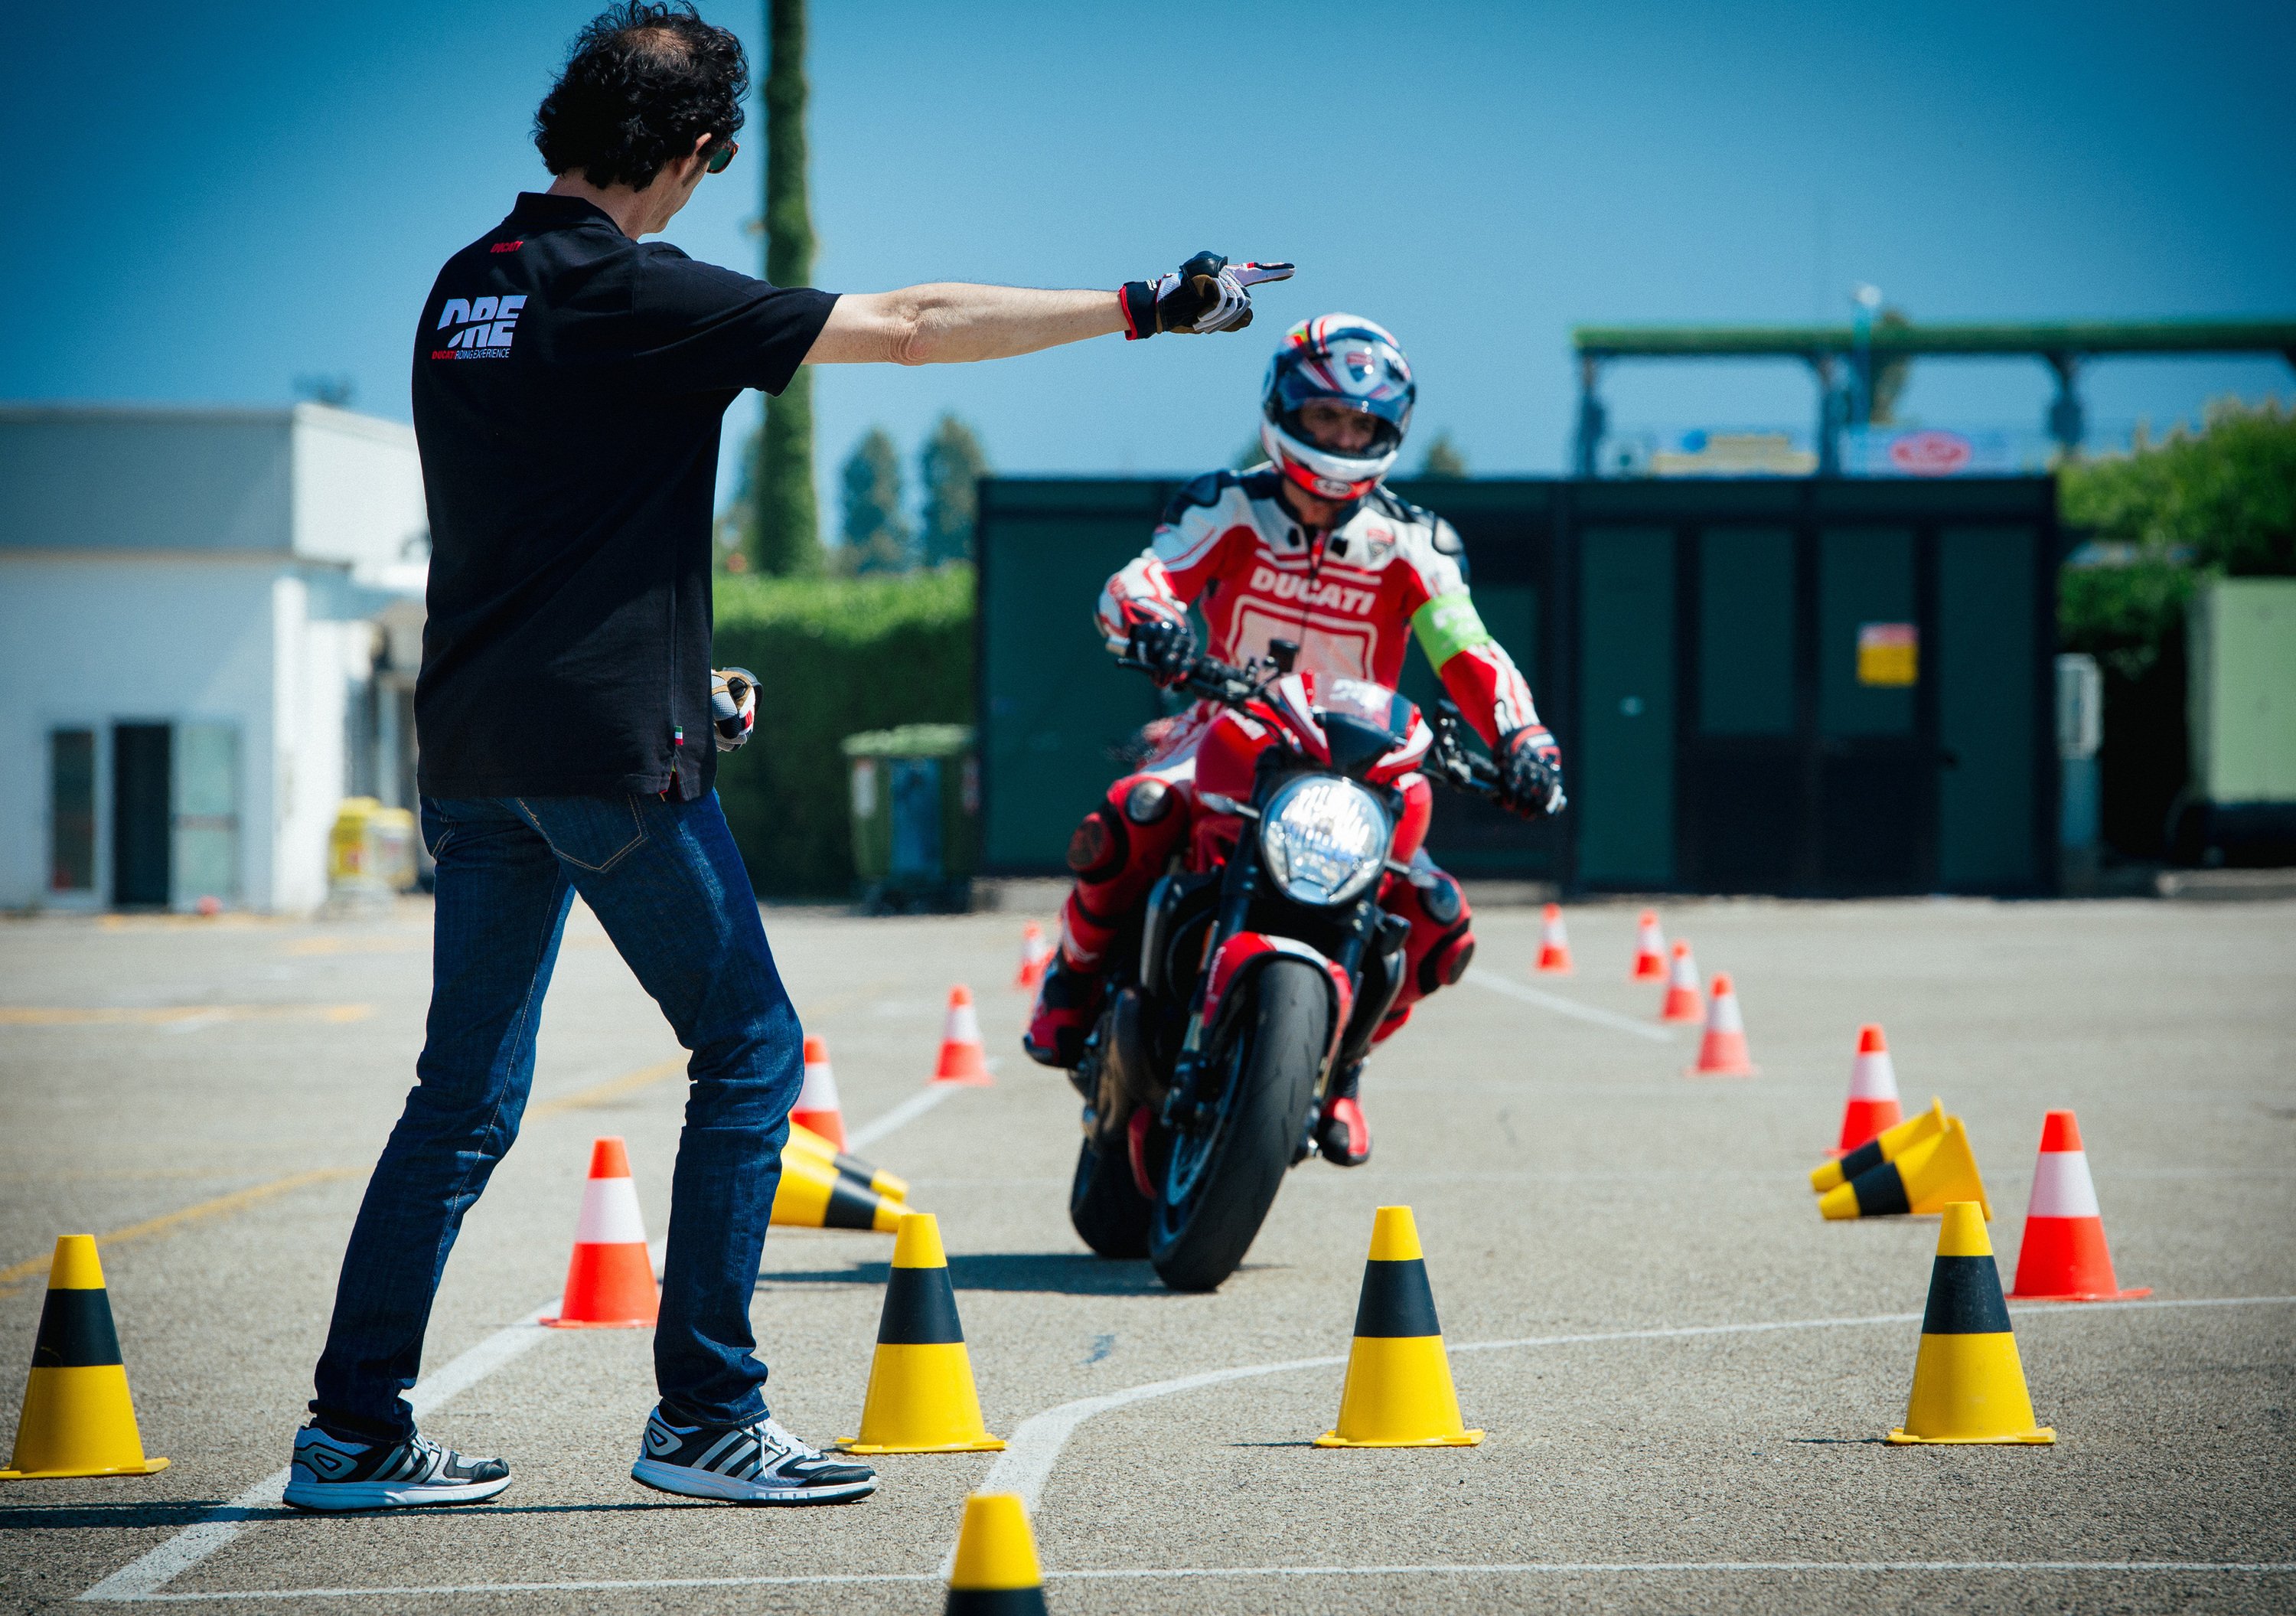 Ducati Riding Academy: i corsi di guida 2018